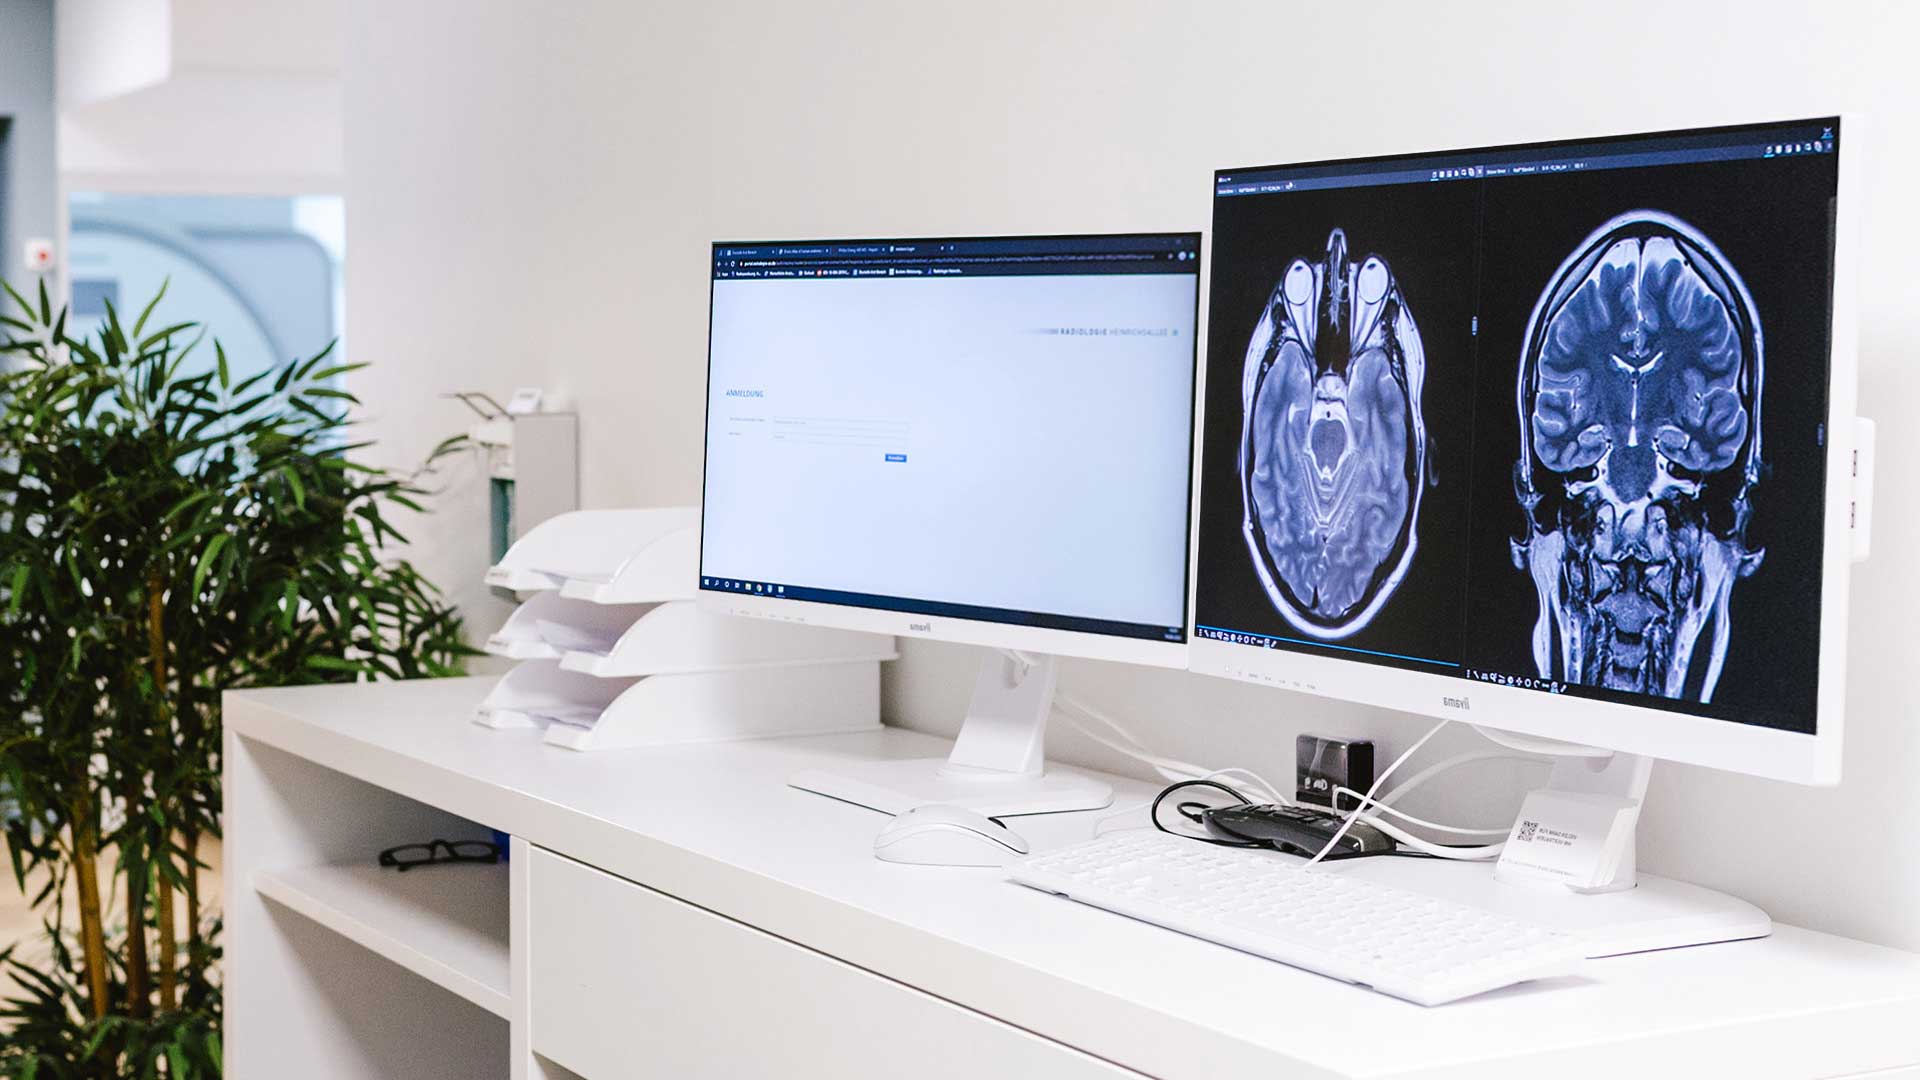 Neuroradiologie in der Radiologie Heinrichsallee, Aachen